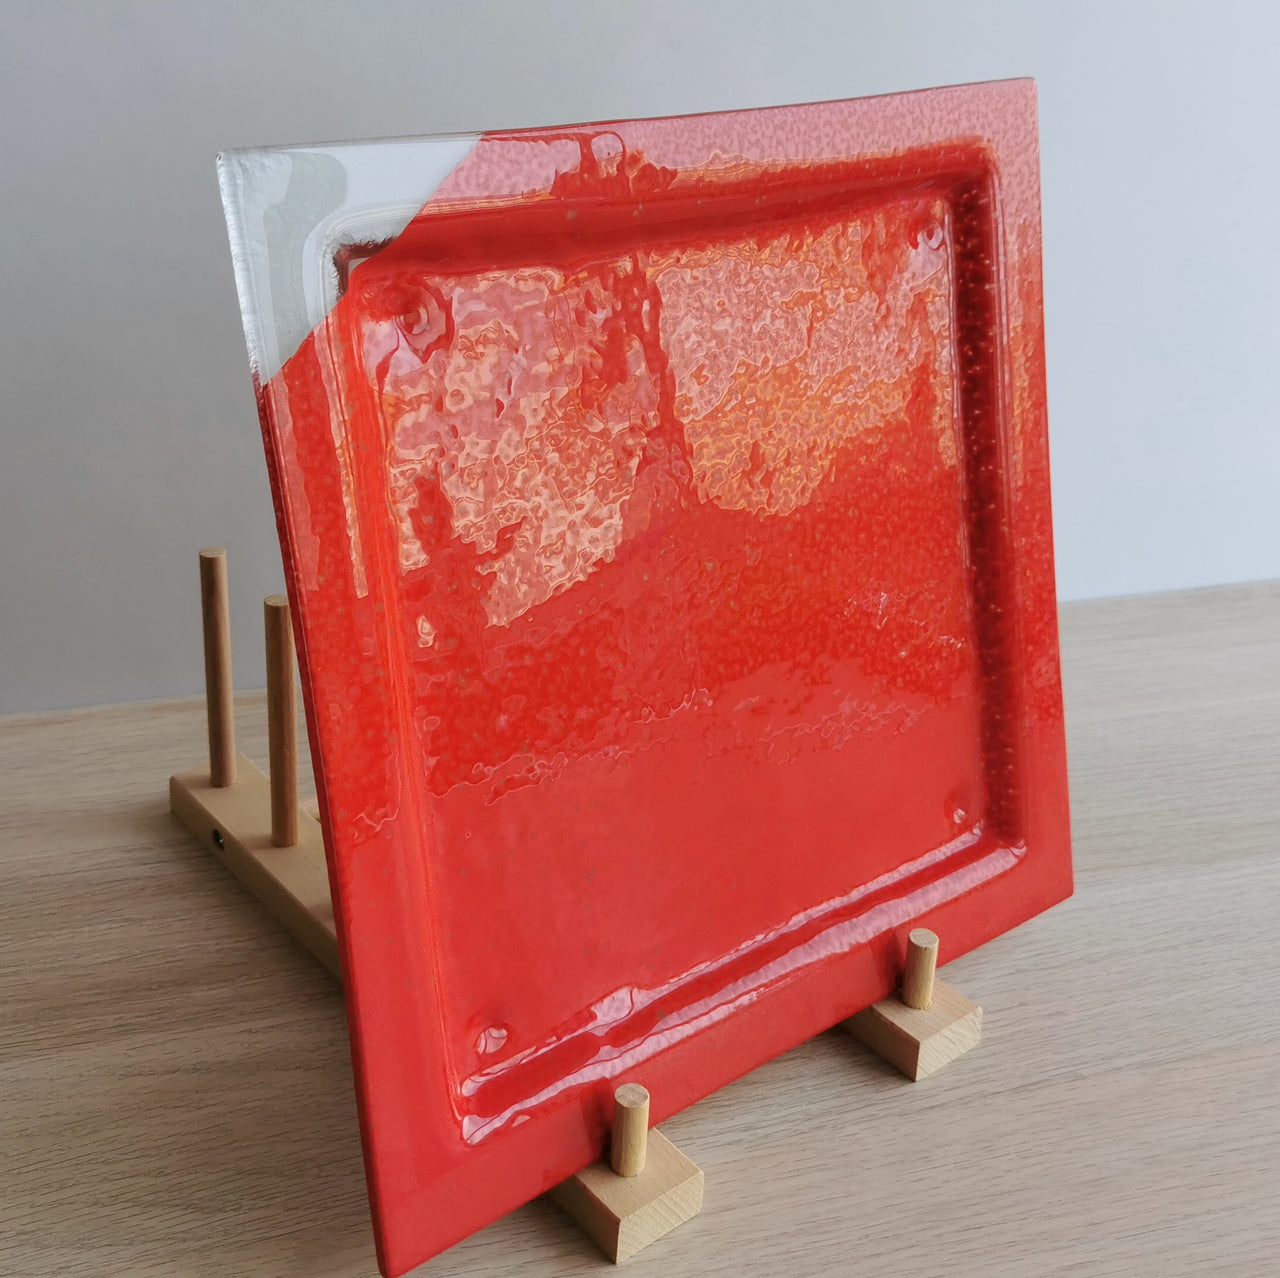 New York Minimalist Poppy&Transparent Glass Main Course Plate. Poppy&Transparent Glass Plate - 10 13/16"x10 13/16" (27,5cm.x27,5cm.)